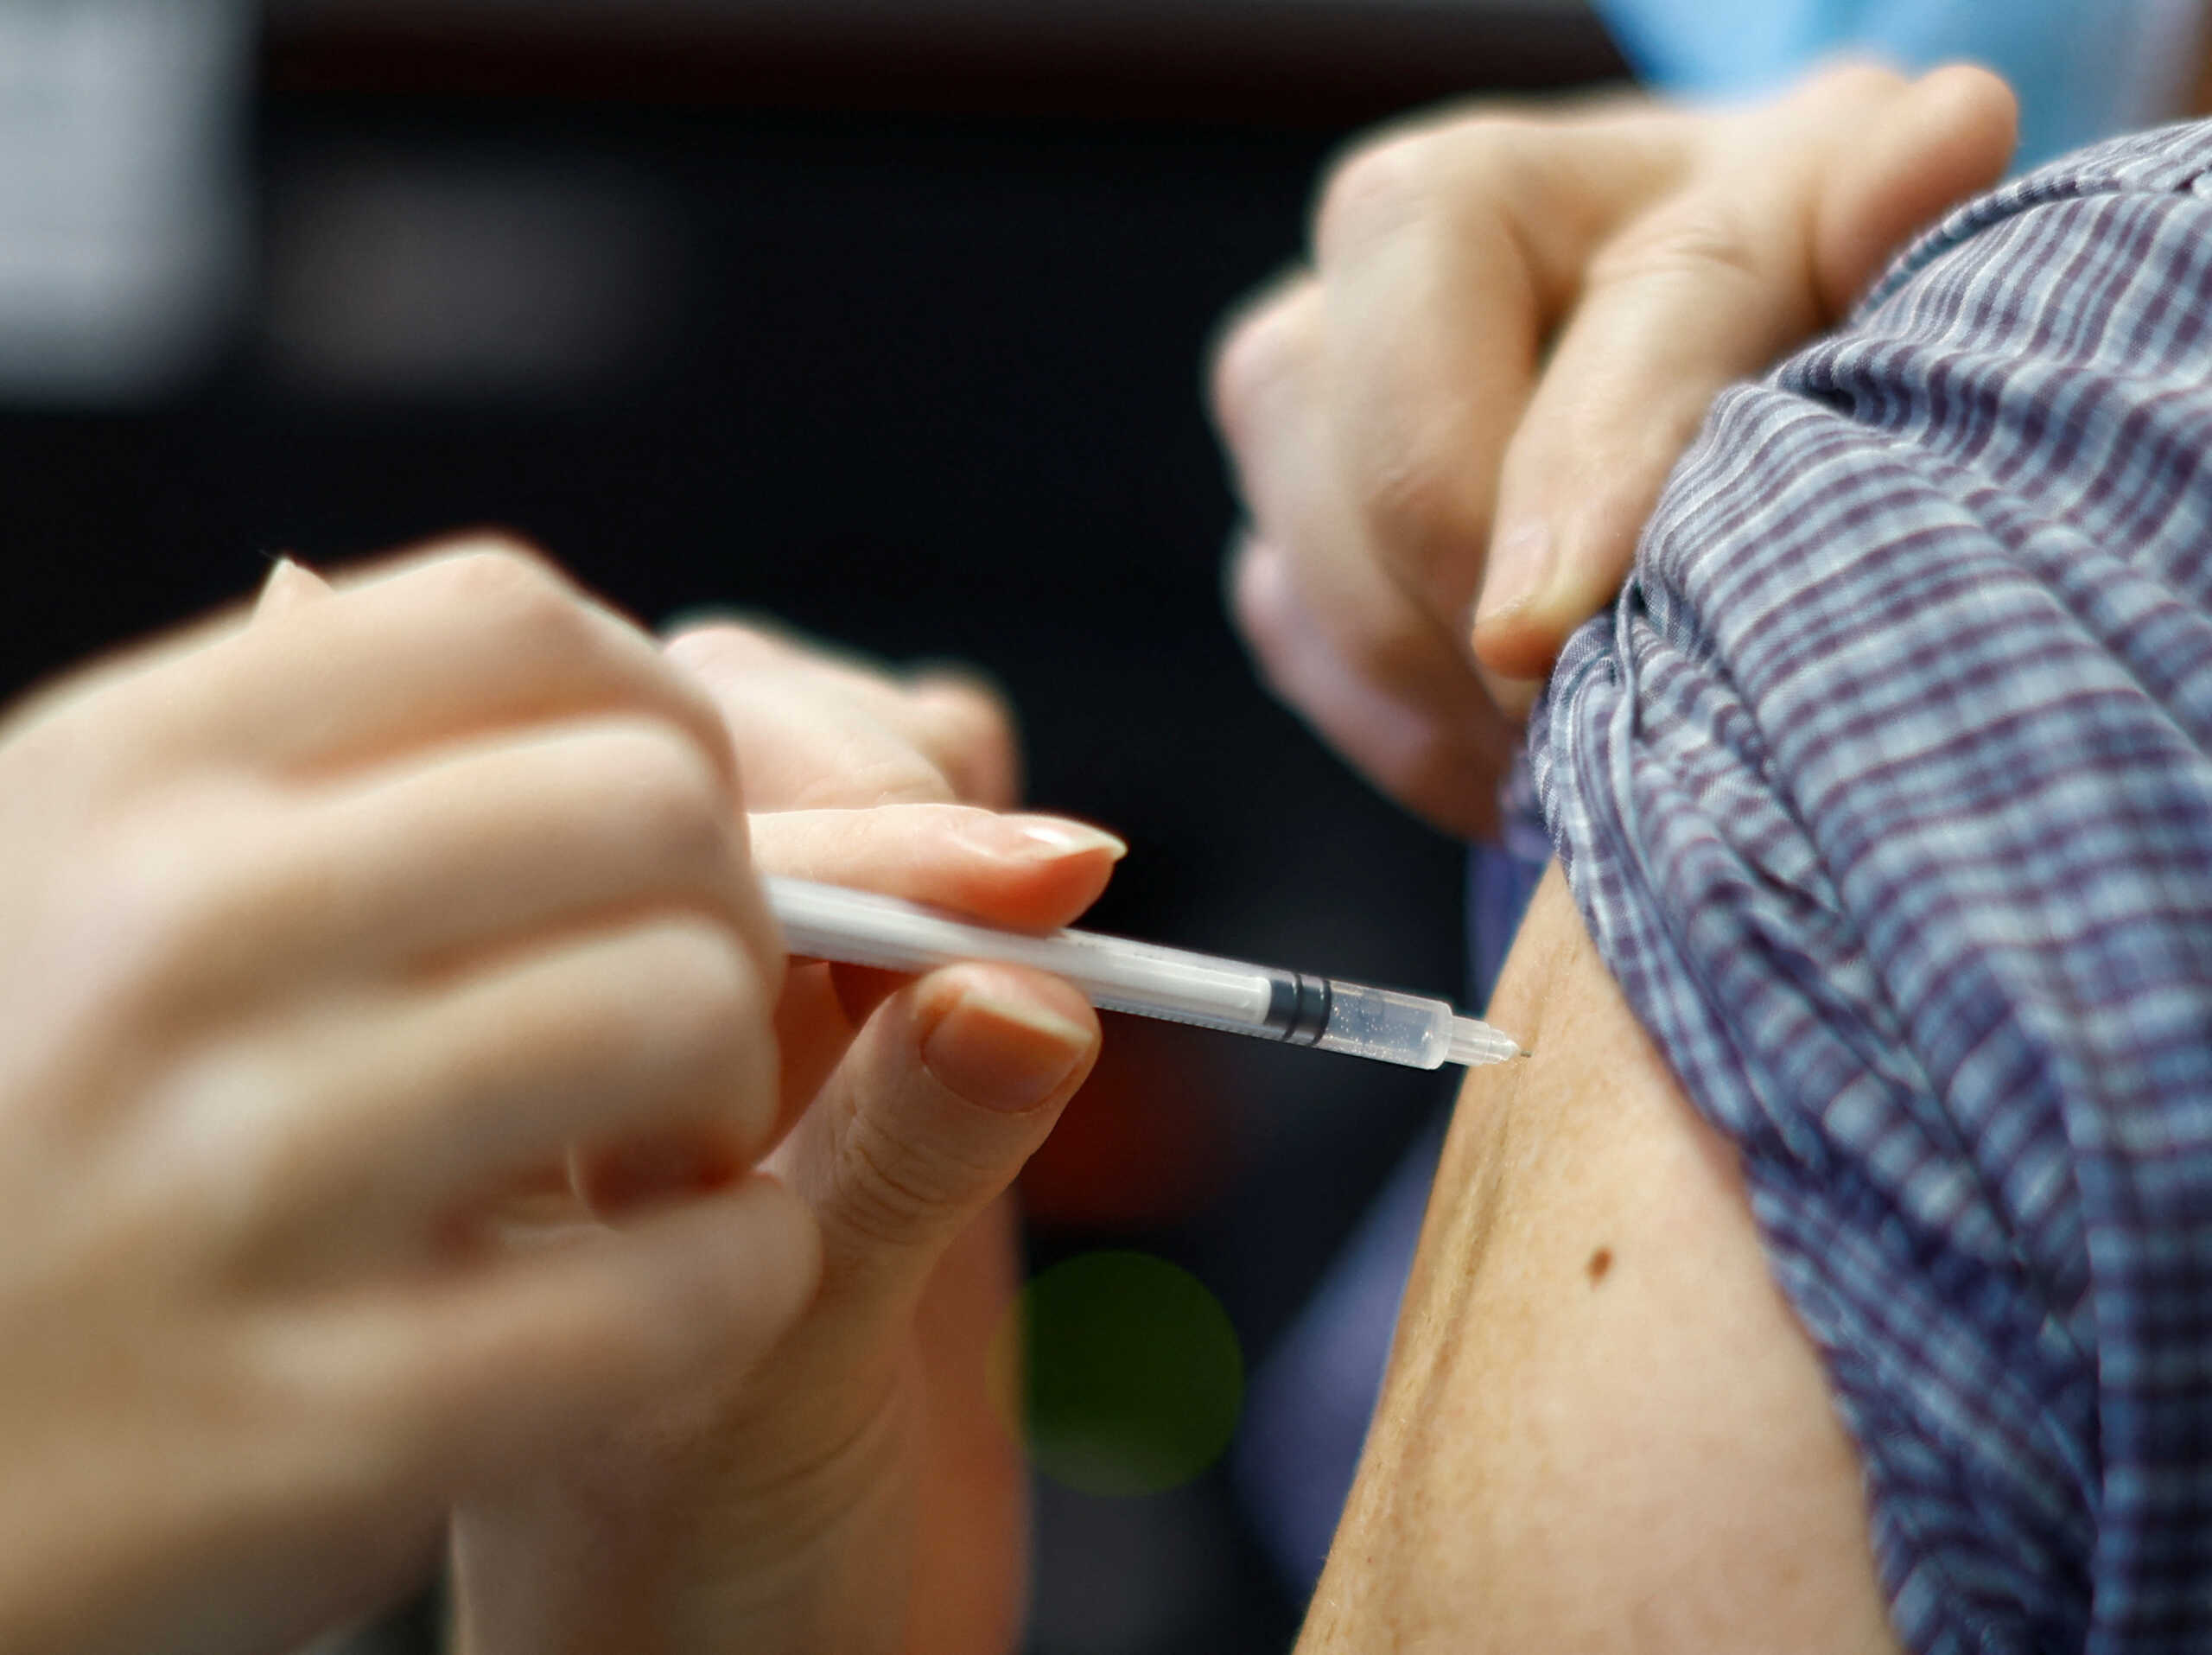 Κορονοϊός – Pfizer: «Σεισμός» με βίντεο στελέχους της εταιρίας να μιλά για σκόπιμες μεταλλάξεις για πώληση νέων εμβολίων